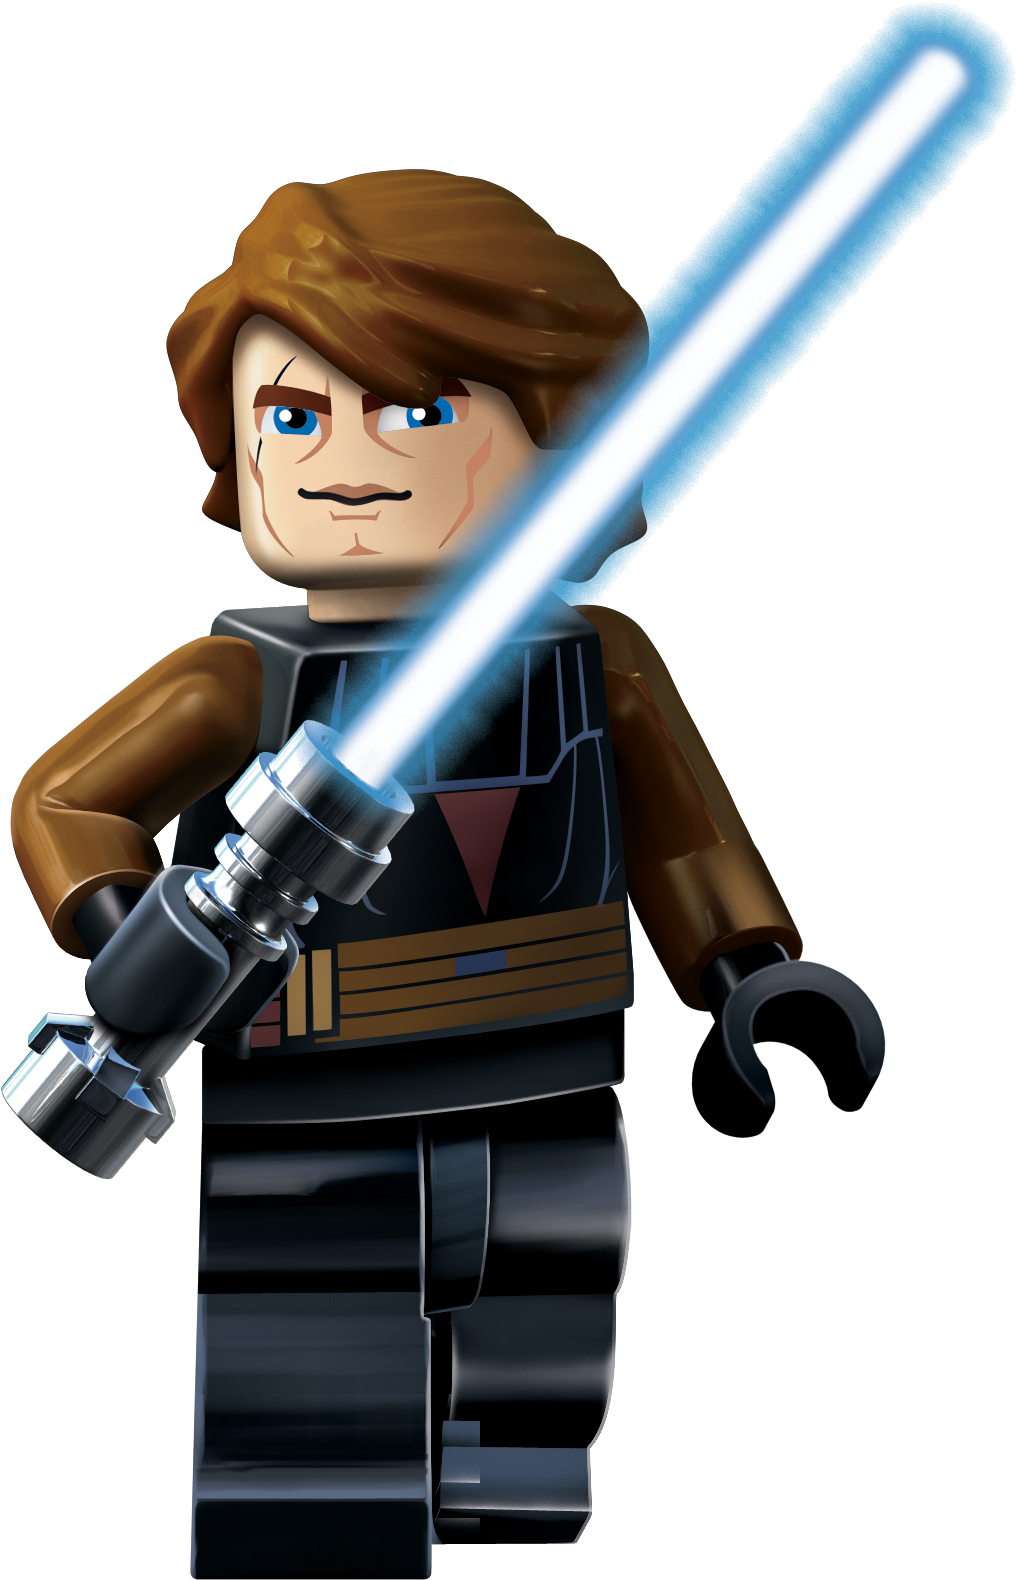 Lego Star Wars transparent PNG